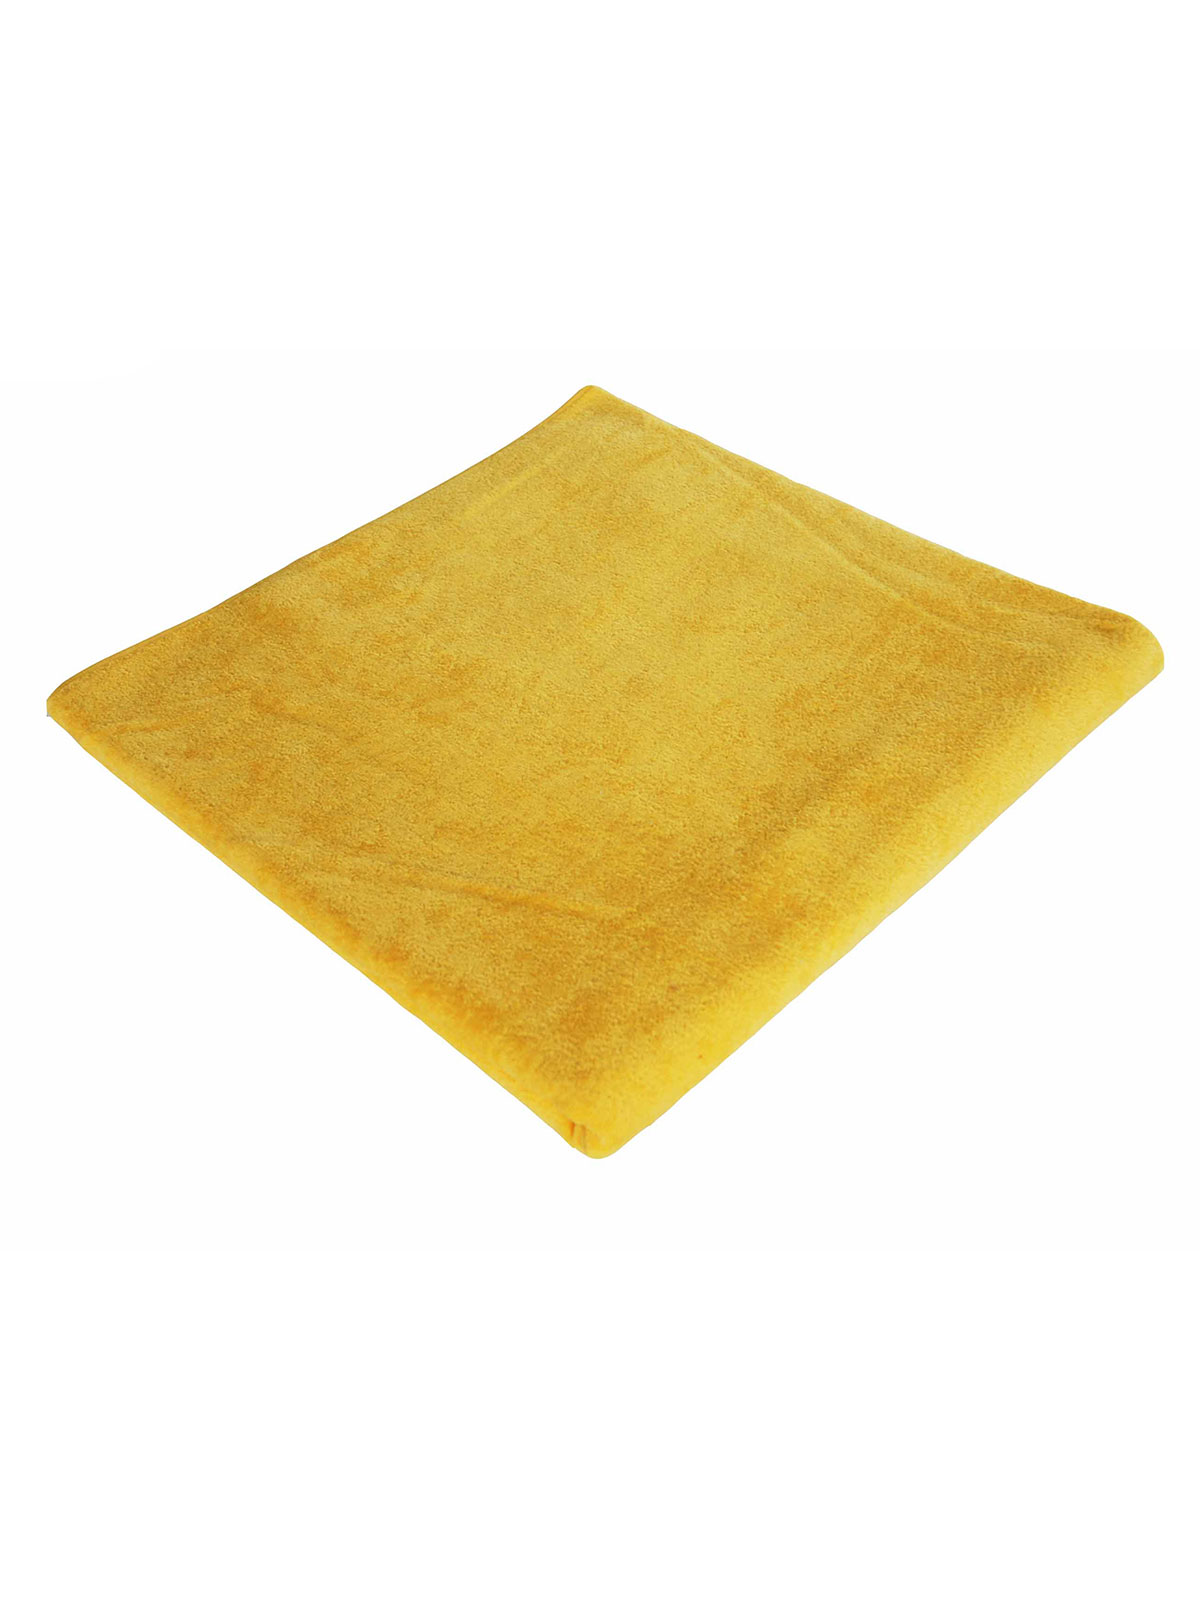 velour-towel-90x180-yellow.webp